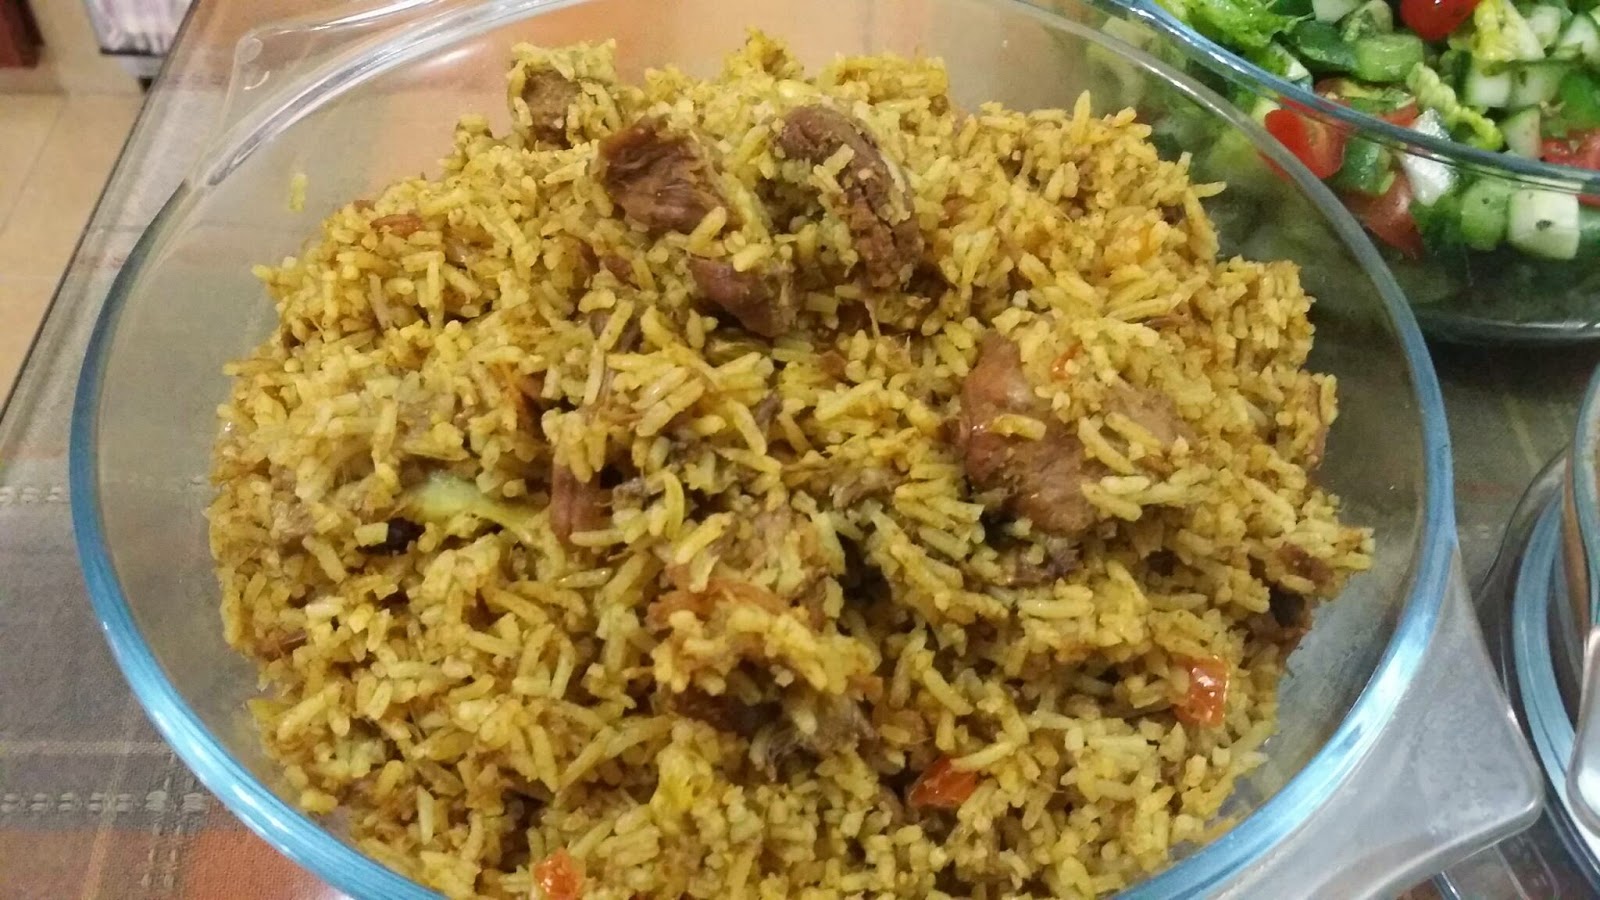 ZULFAZA LOVES COOKING: Nasi daging mamak penang style